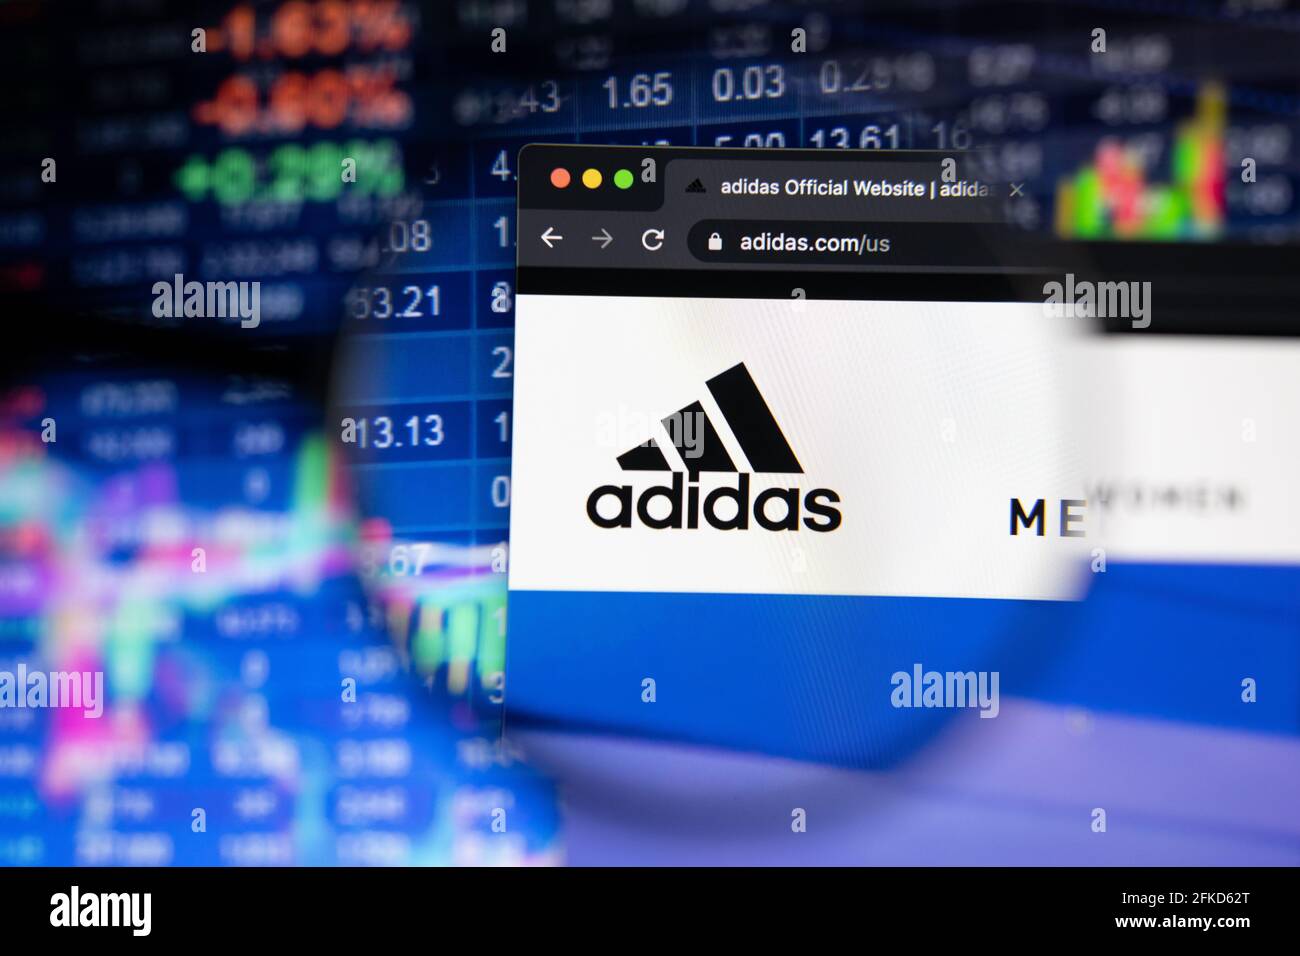 Logotipo de la empresa adidas en un sitio web con la evolución borrosa del mercado valores en fondo, visto en una pantalla de ordenador a través de una lupa Fotografía